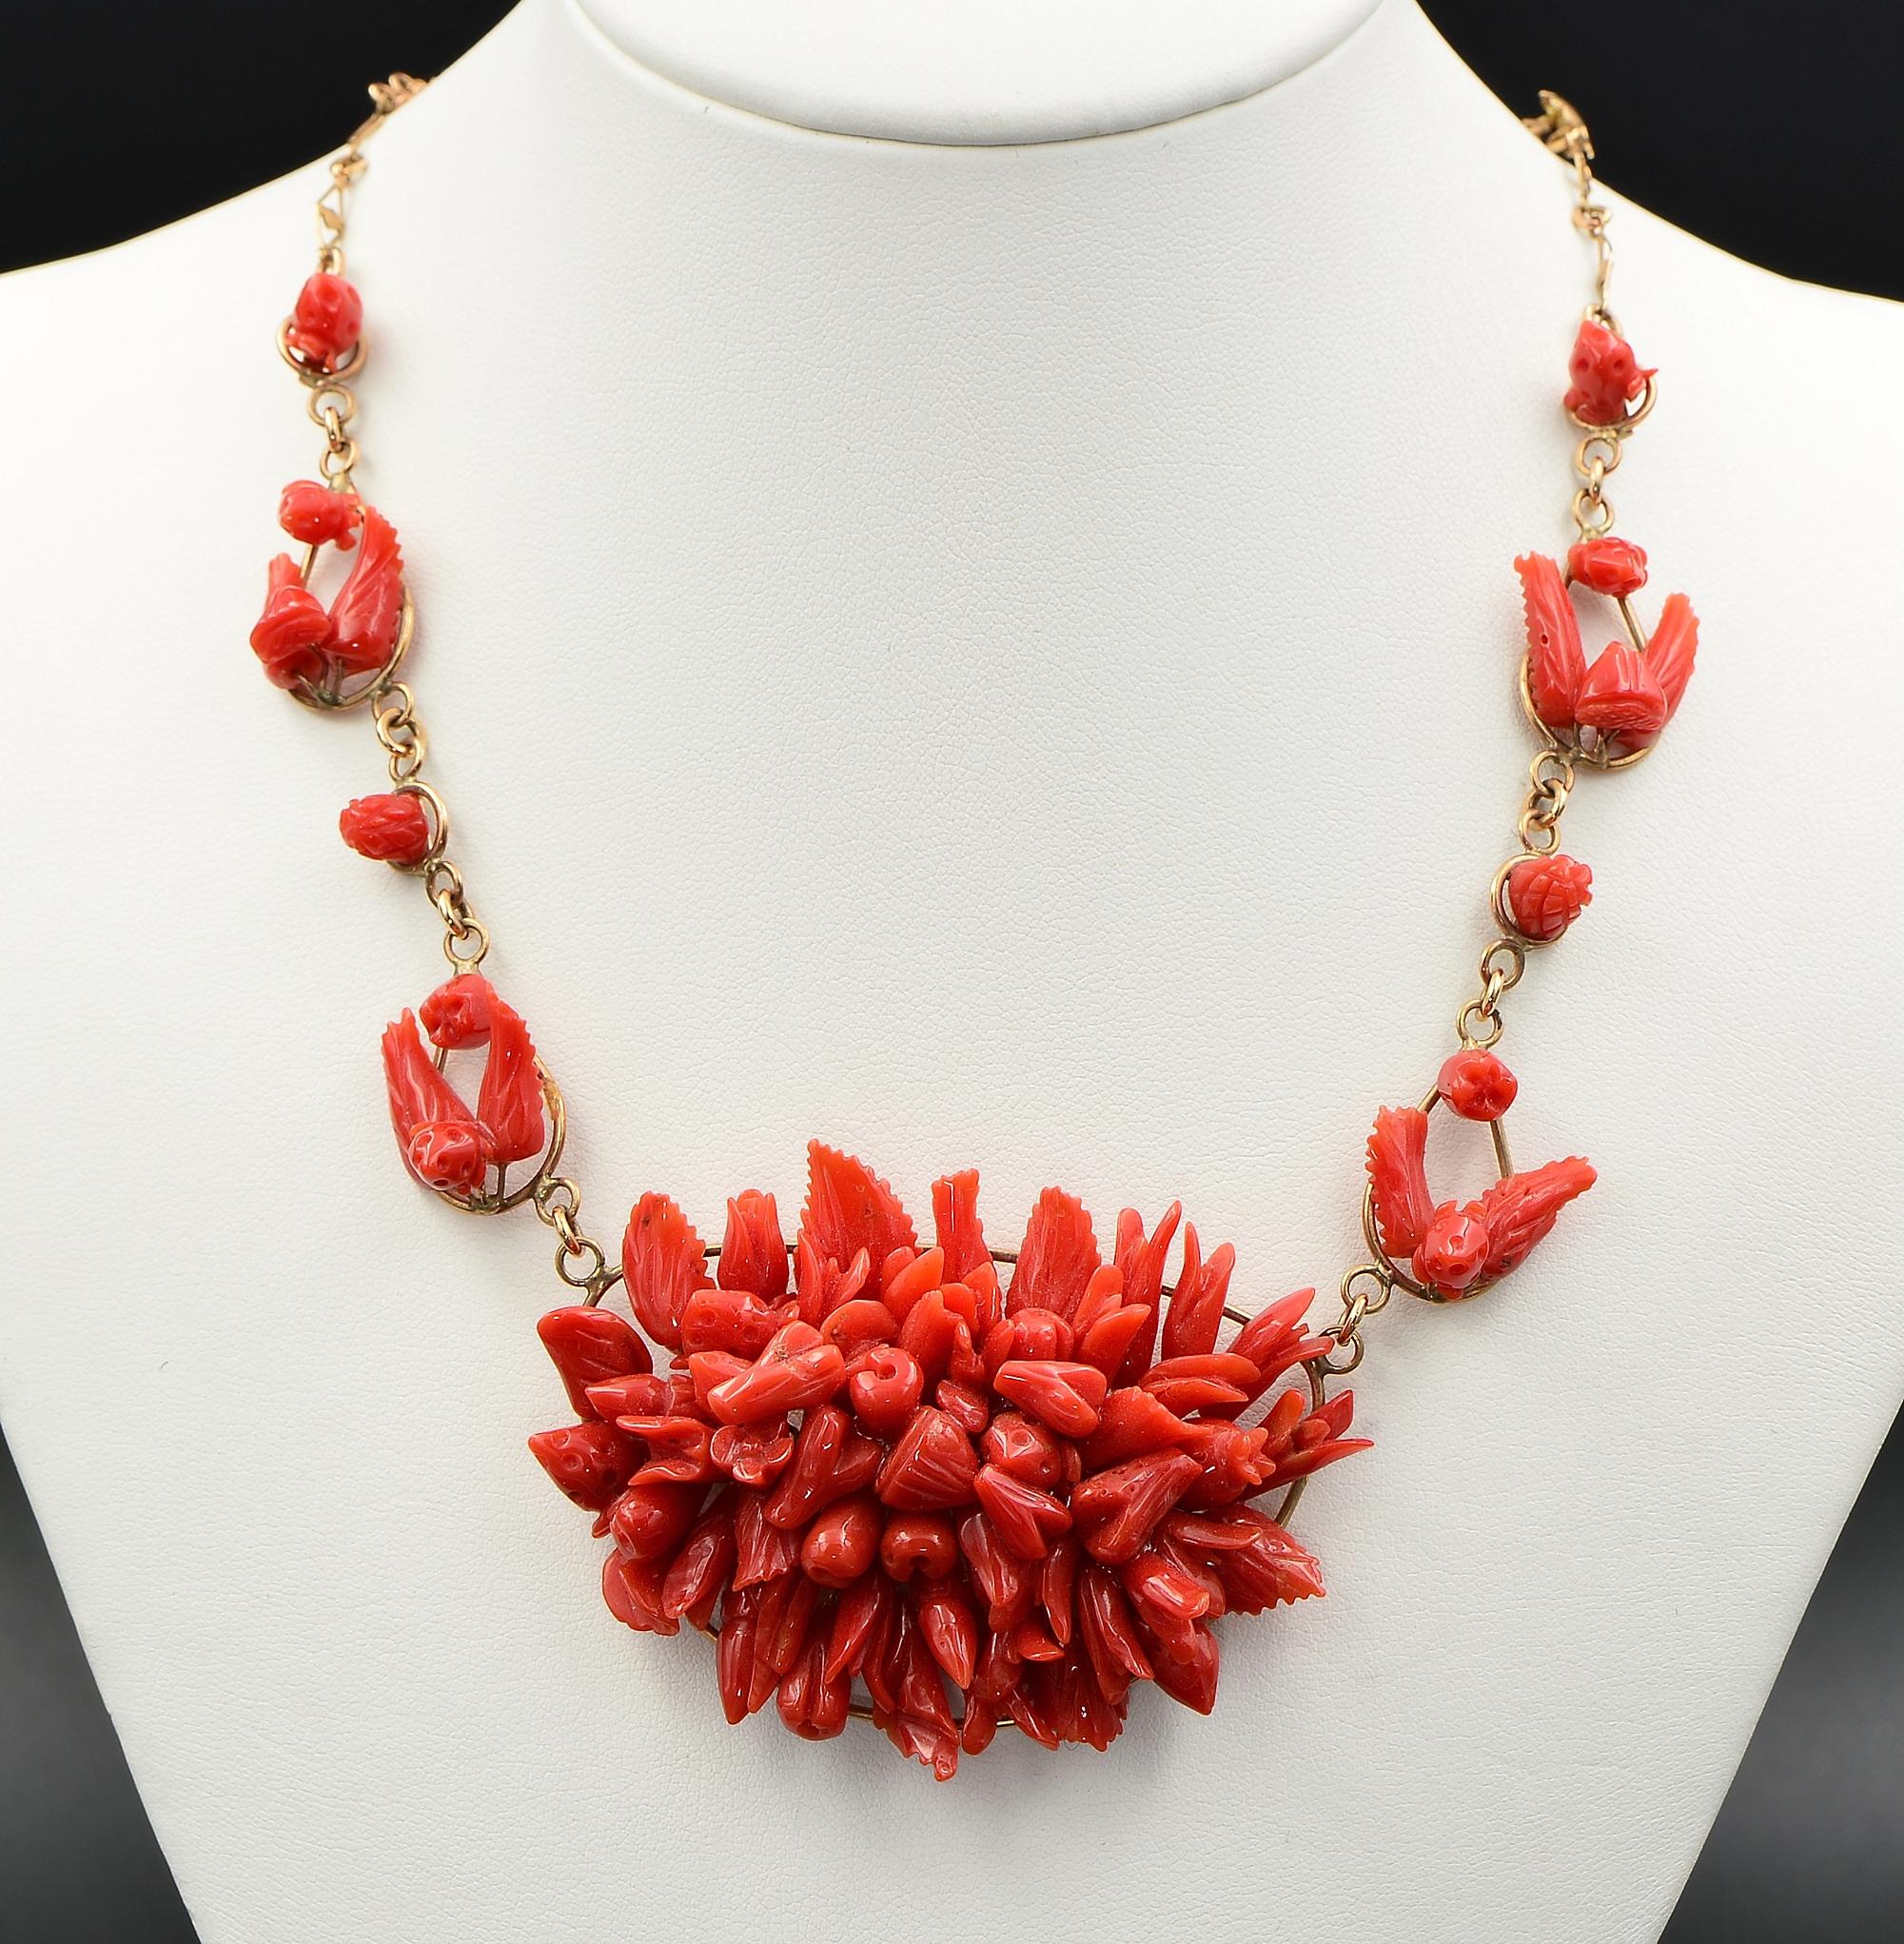 Korallen-Kunst
Antike 1920 ca, Kunstfertigkeit gemacht Tutti Frutti Coral volle Halskette
Ein Zentrum breite Platte von Tutti Frutti der attraktiven roten Koralle ist in der Mitte gesetzt, das ist ganz von Hand gearbeitet von Natural Red Coral, von